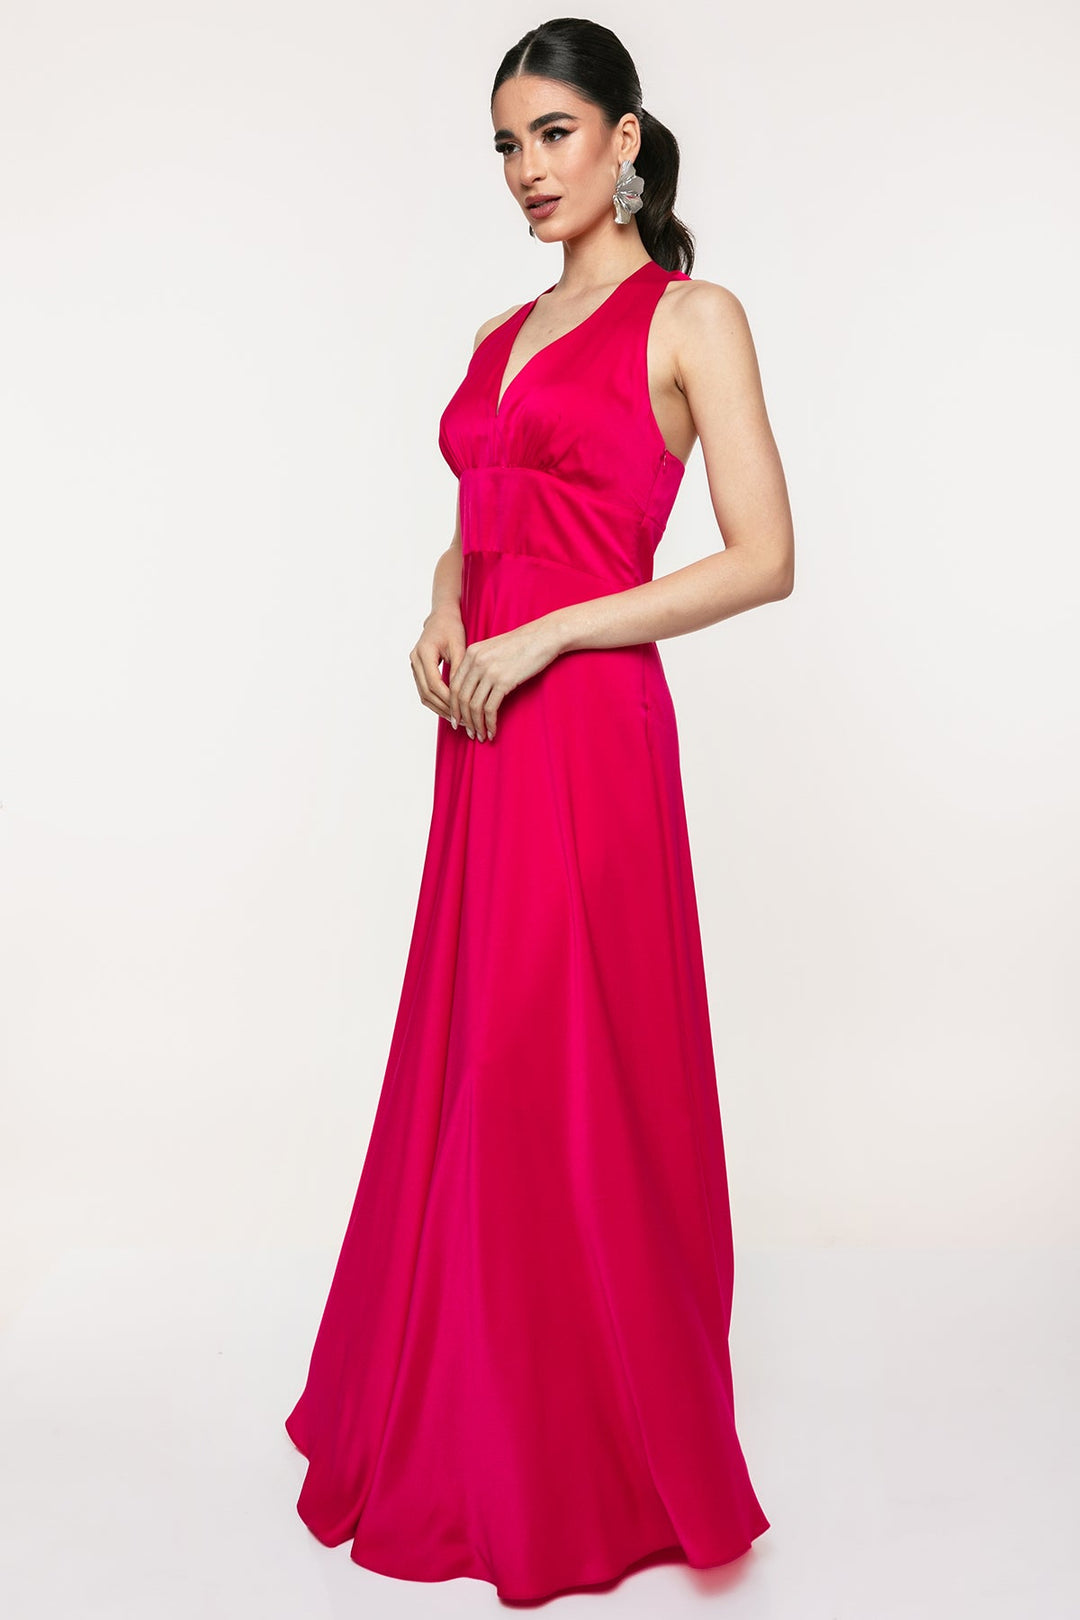 Φόρεμα μάξι σατέν Coelia - A Collection Boutique